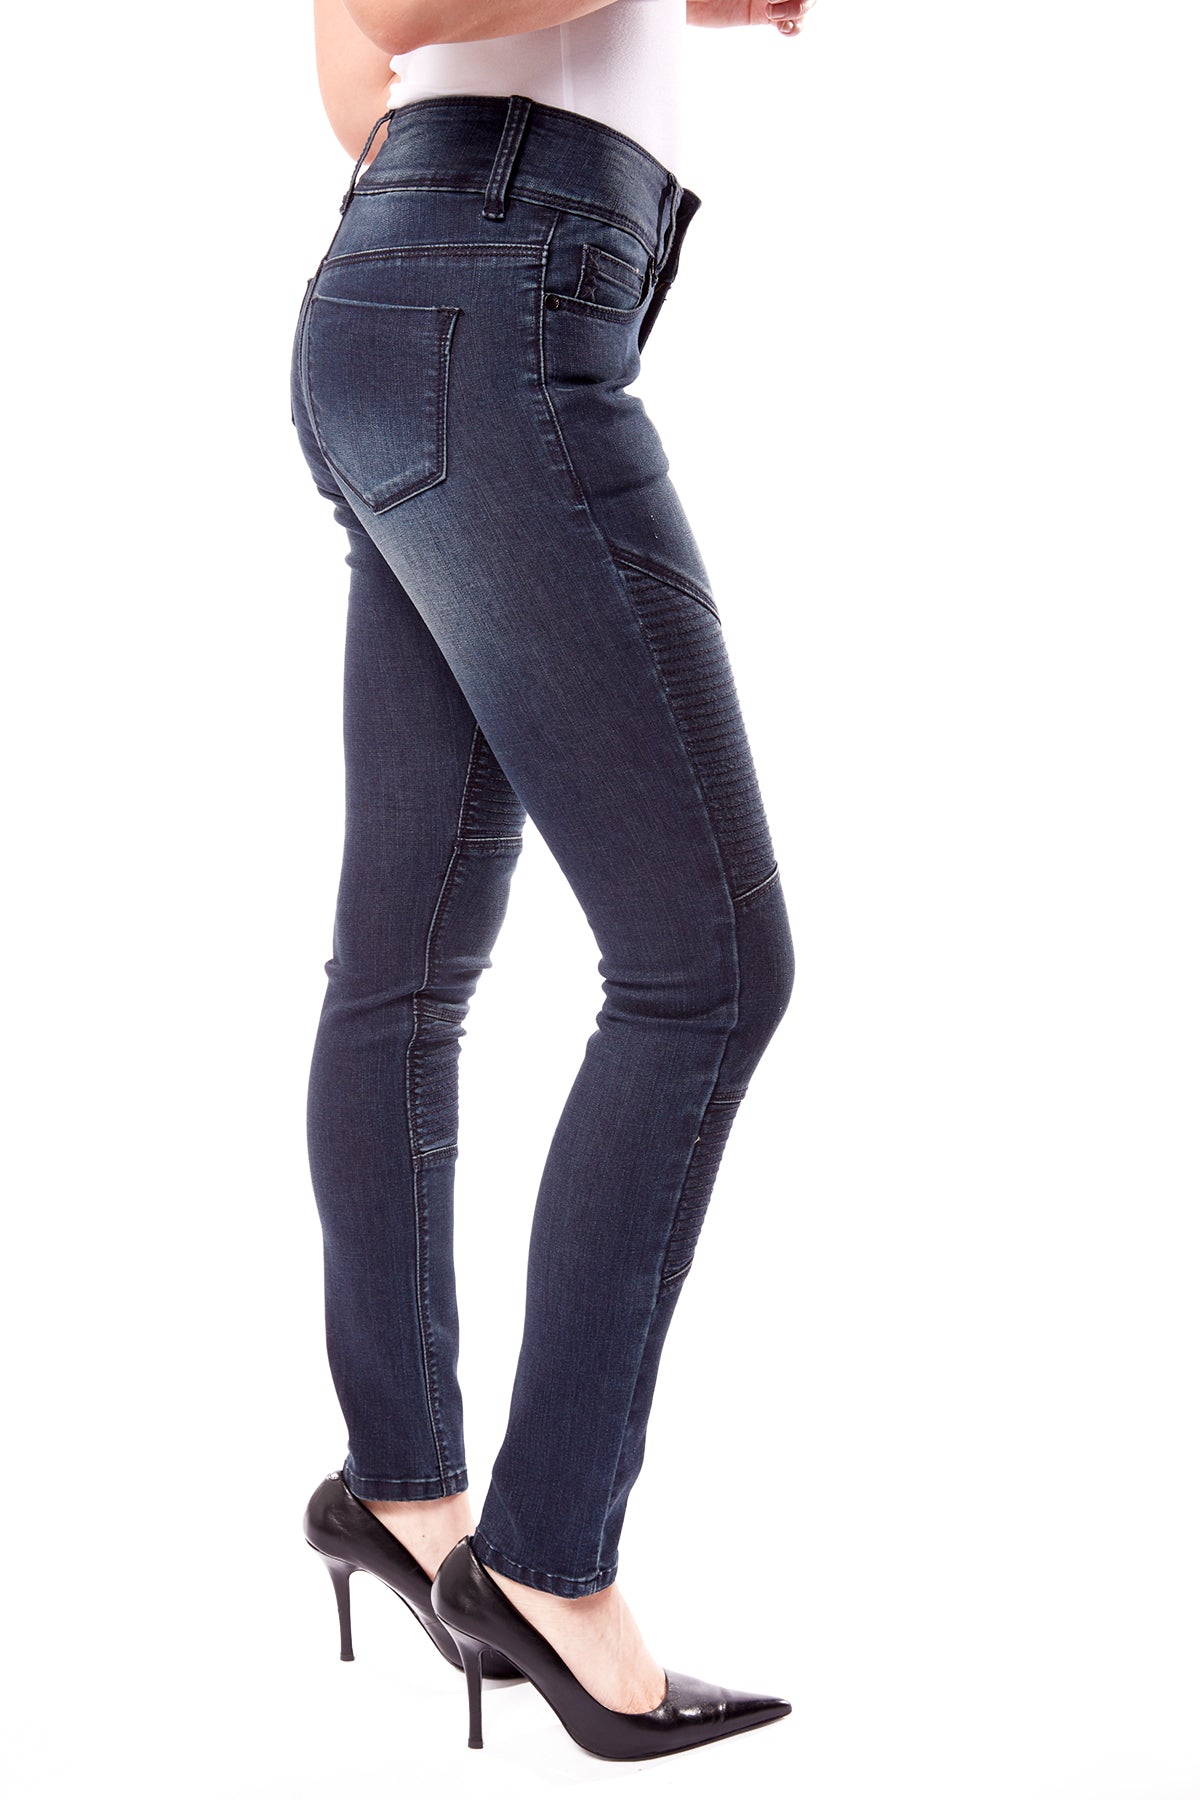 High Waisted Skinny Moto Jeans - Vintage Dark Indigo Rinse - DENIM SOCIETY™